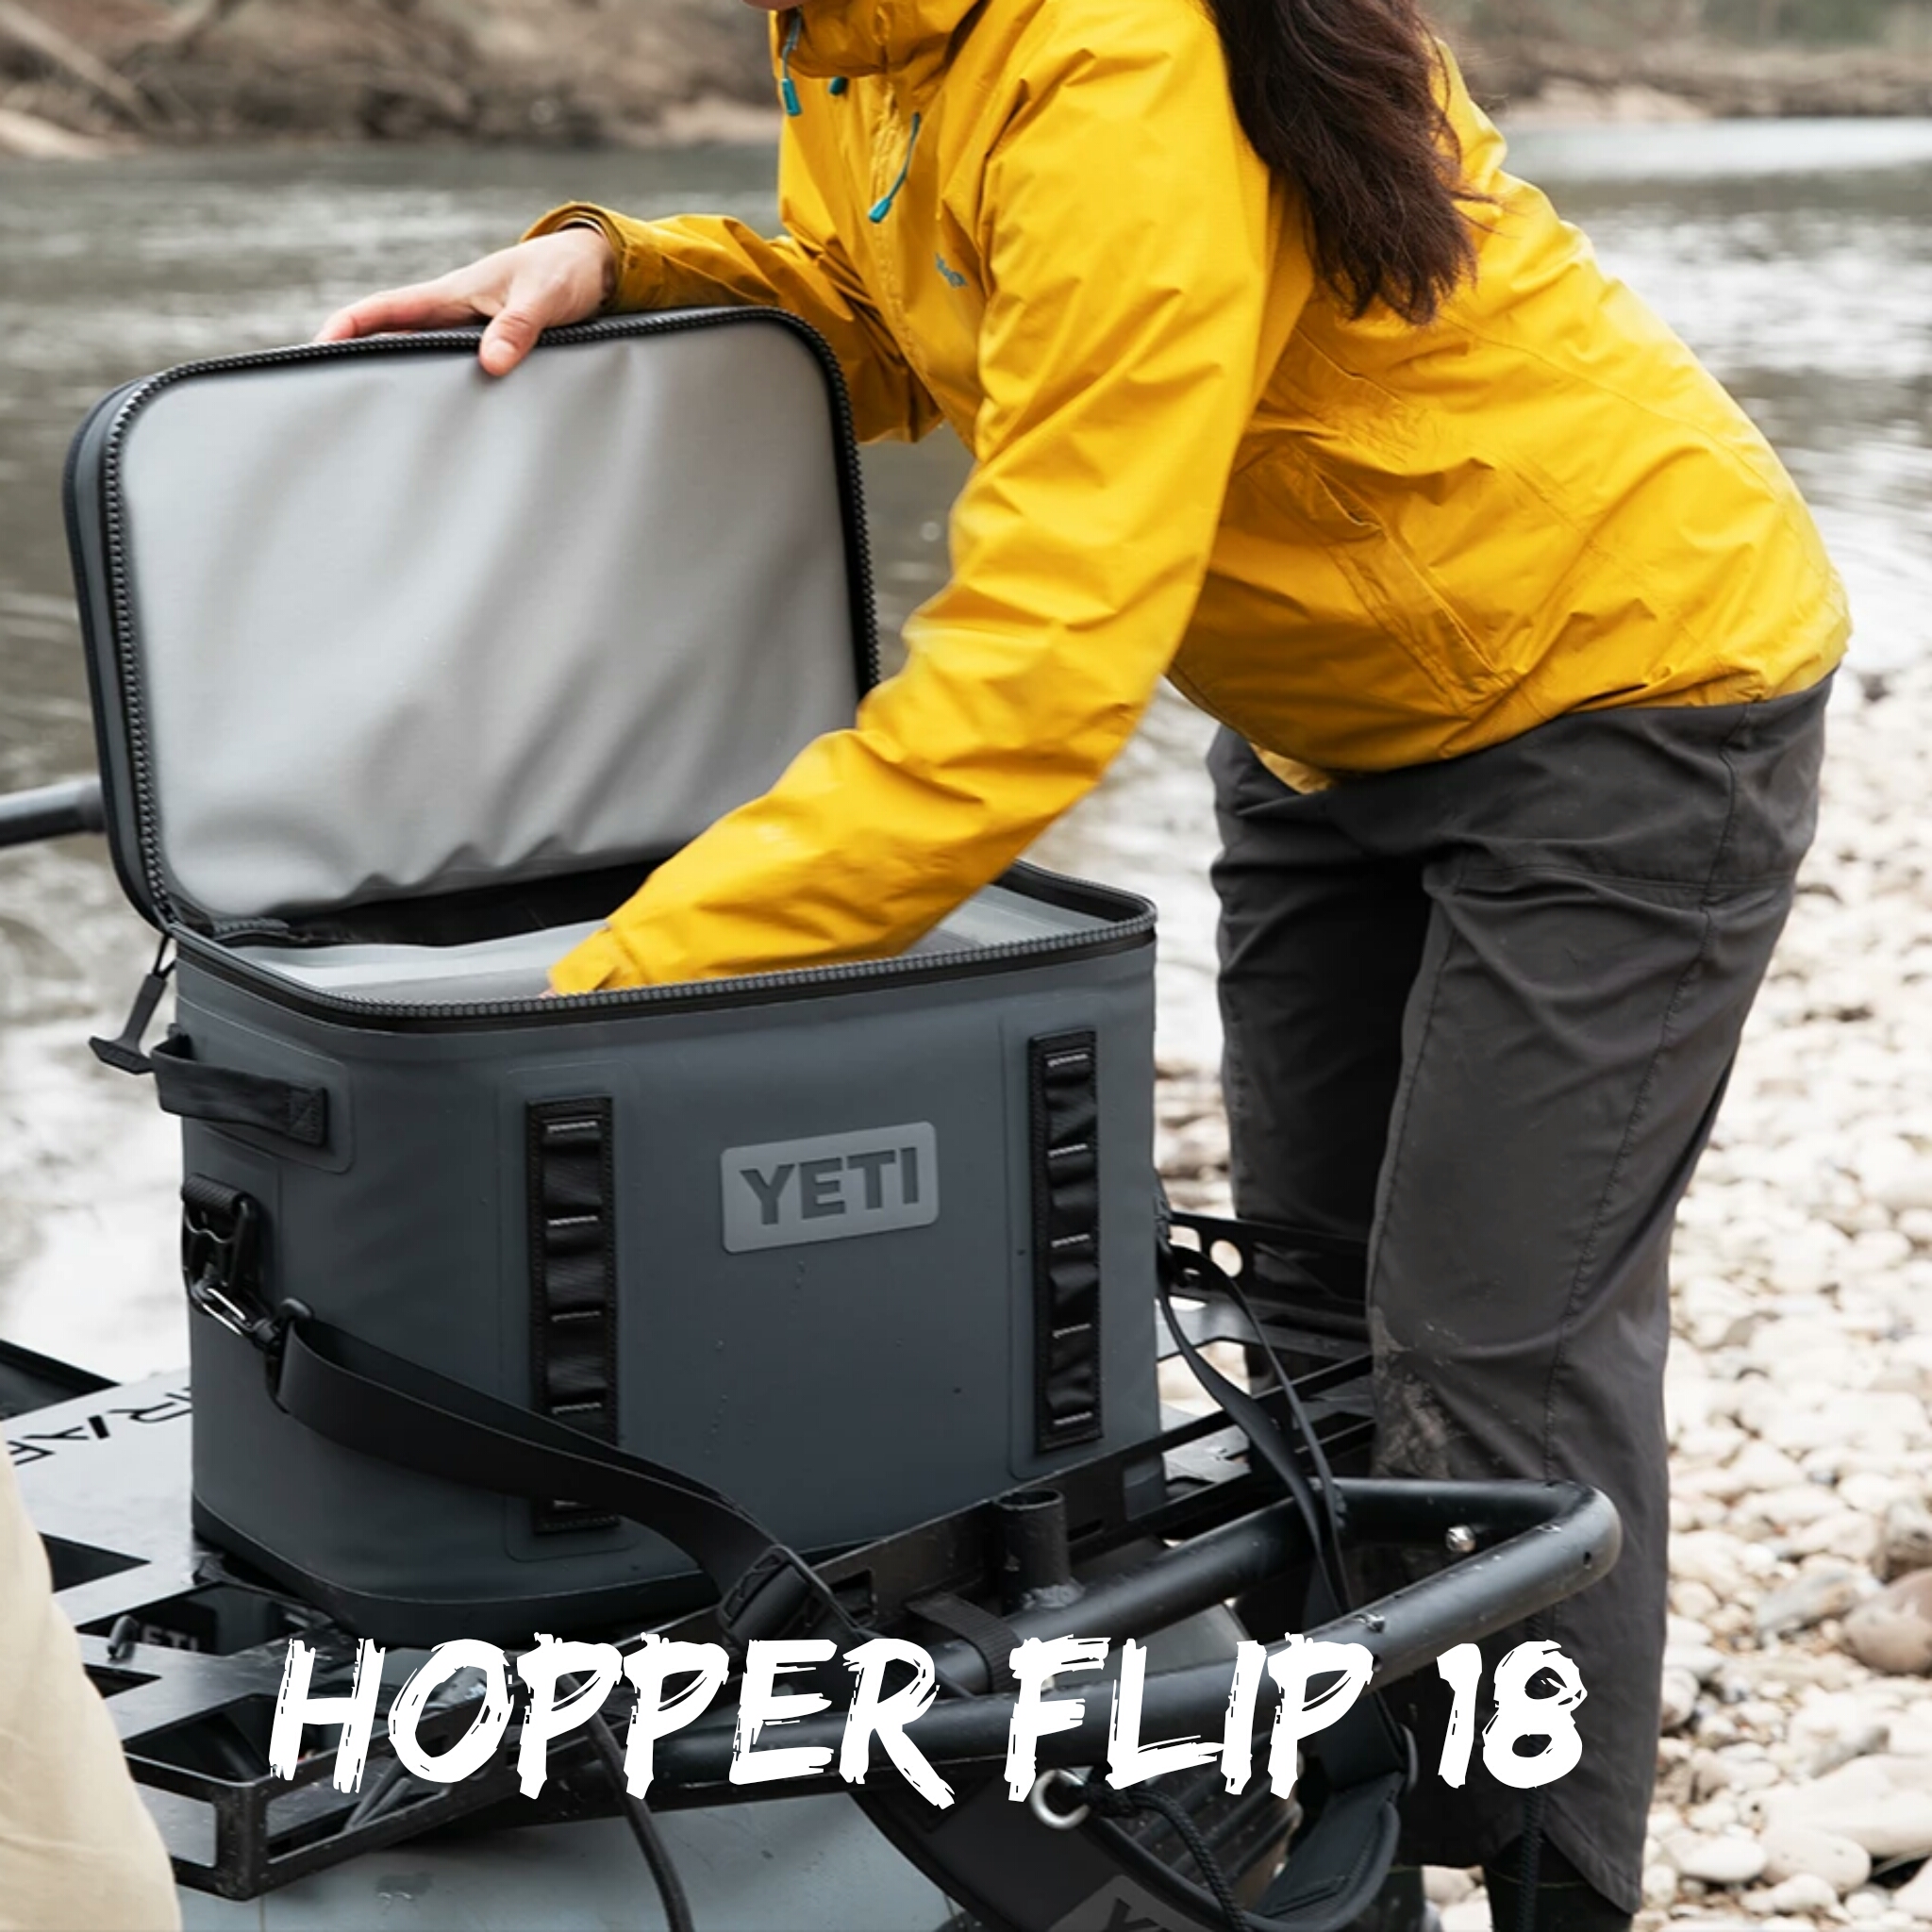 YETI Hopper Flip 18 Cooler